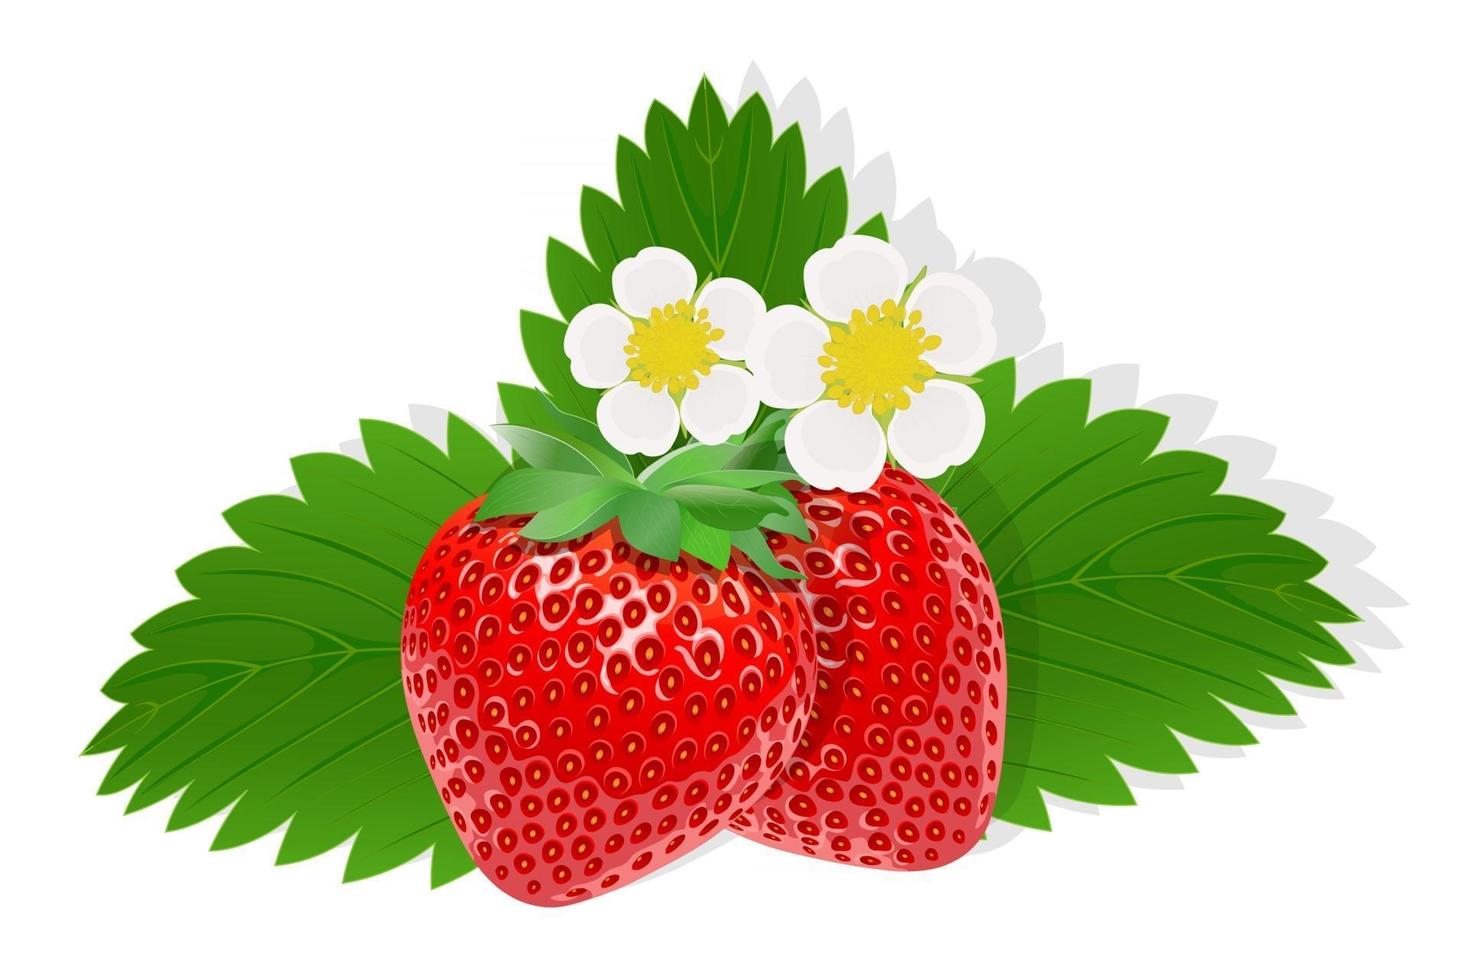 blomma av jordgubbar illustration för webben isolerad på vit bakgrund vektor